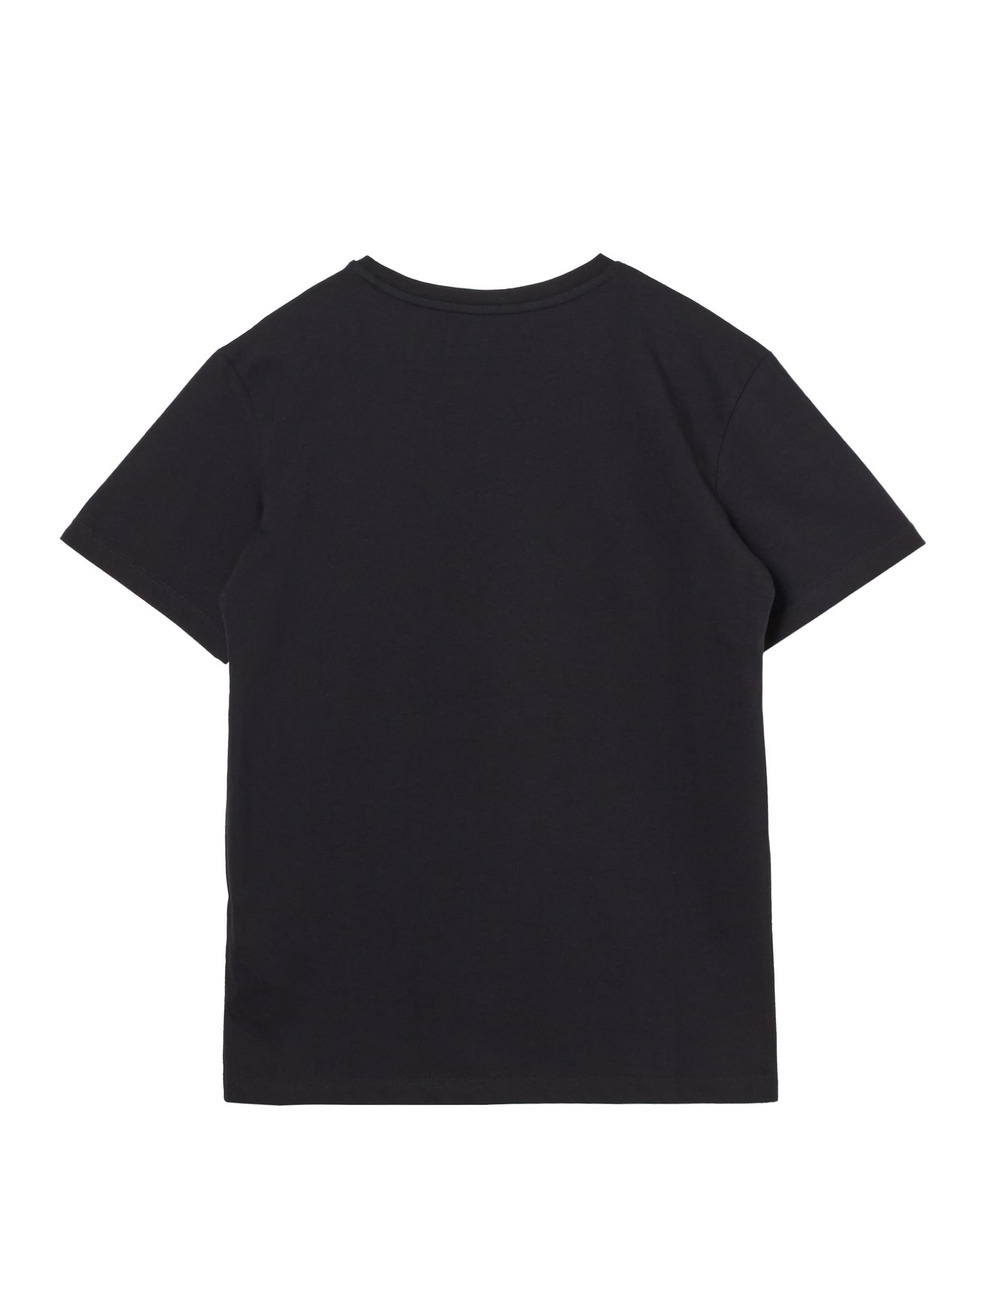 プリント刺繍スカルTシャツ(半袖) / ENBROIDERED SKULL TEE  詳細画像 ブラック 2